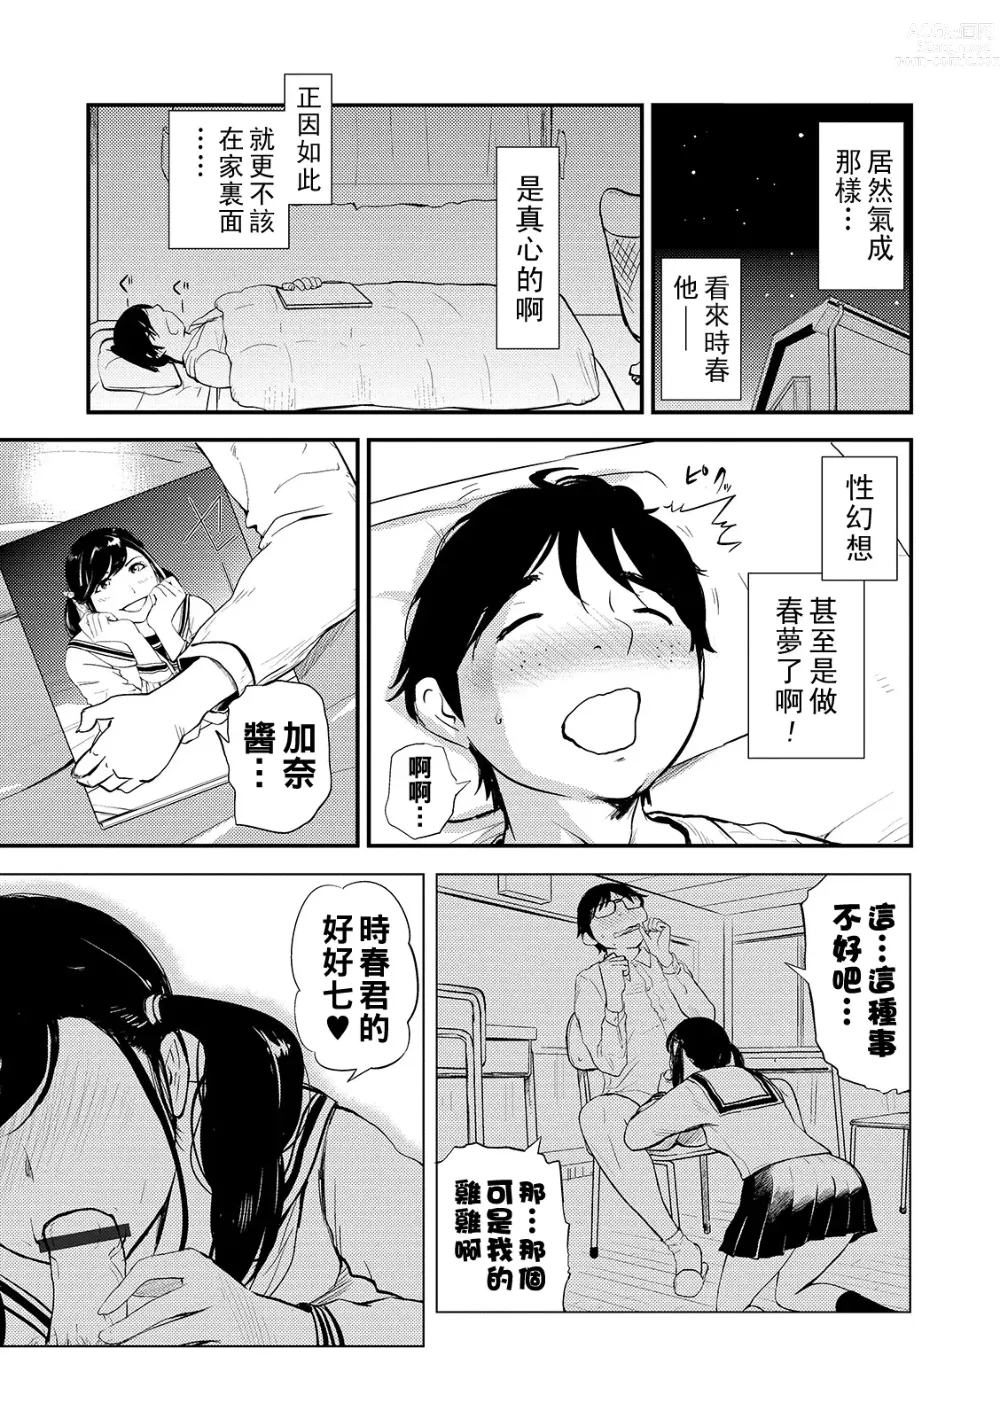 Page 7 of manga Mama no Kitsch Return